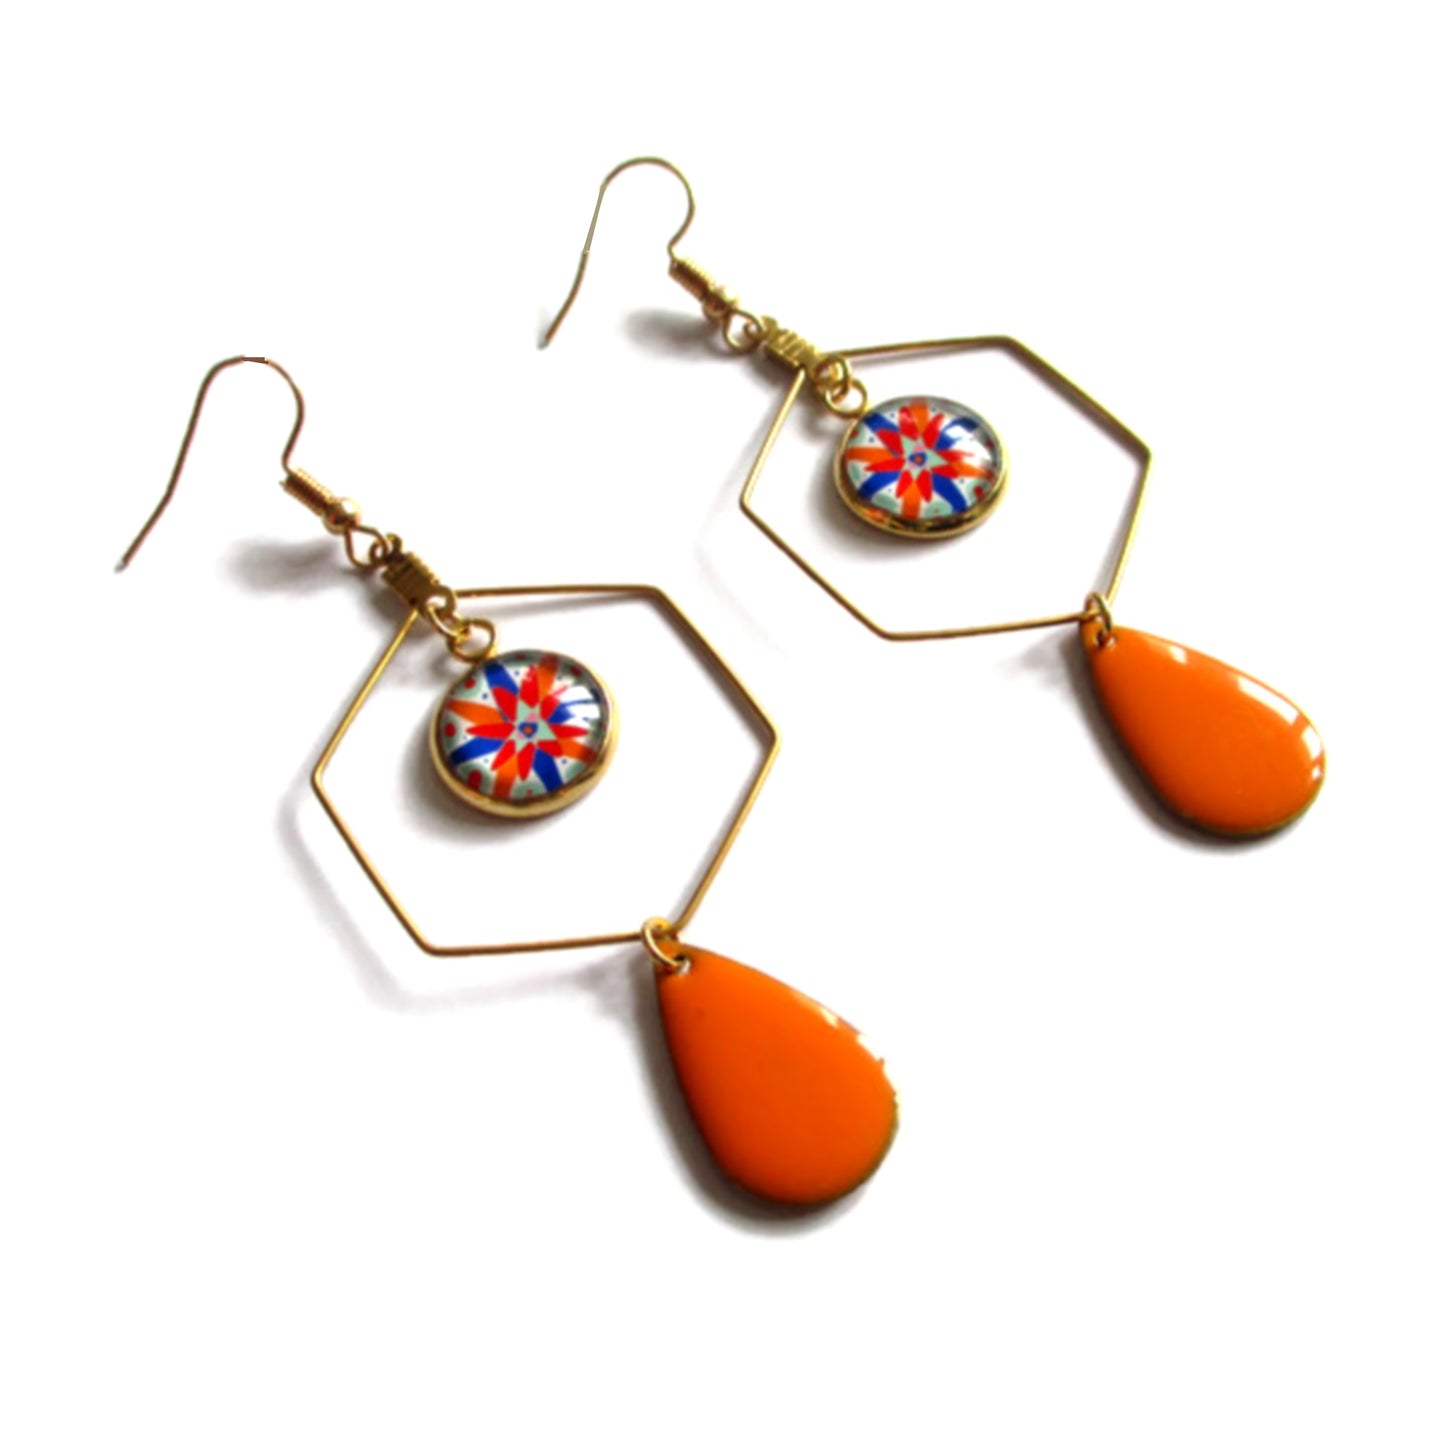 Boucles d'oreilles acier inoxydable doré, Boucles hexagones motif géométrique coloré émail orange ou bleu